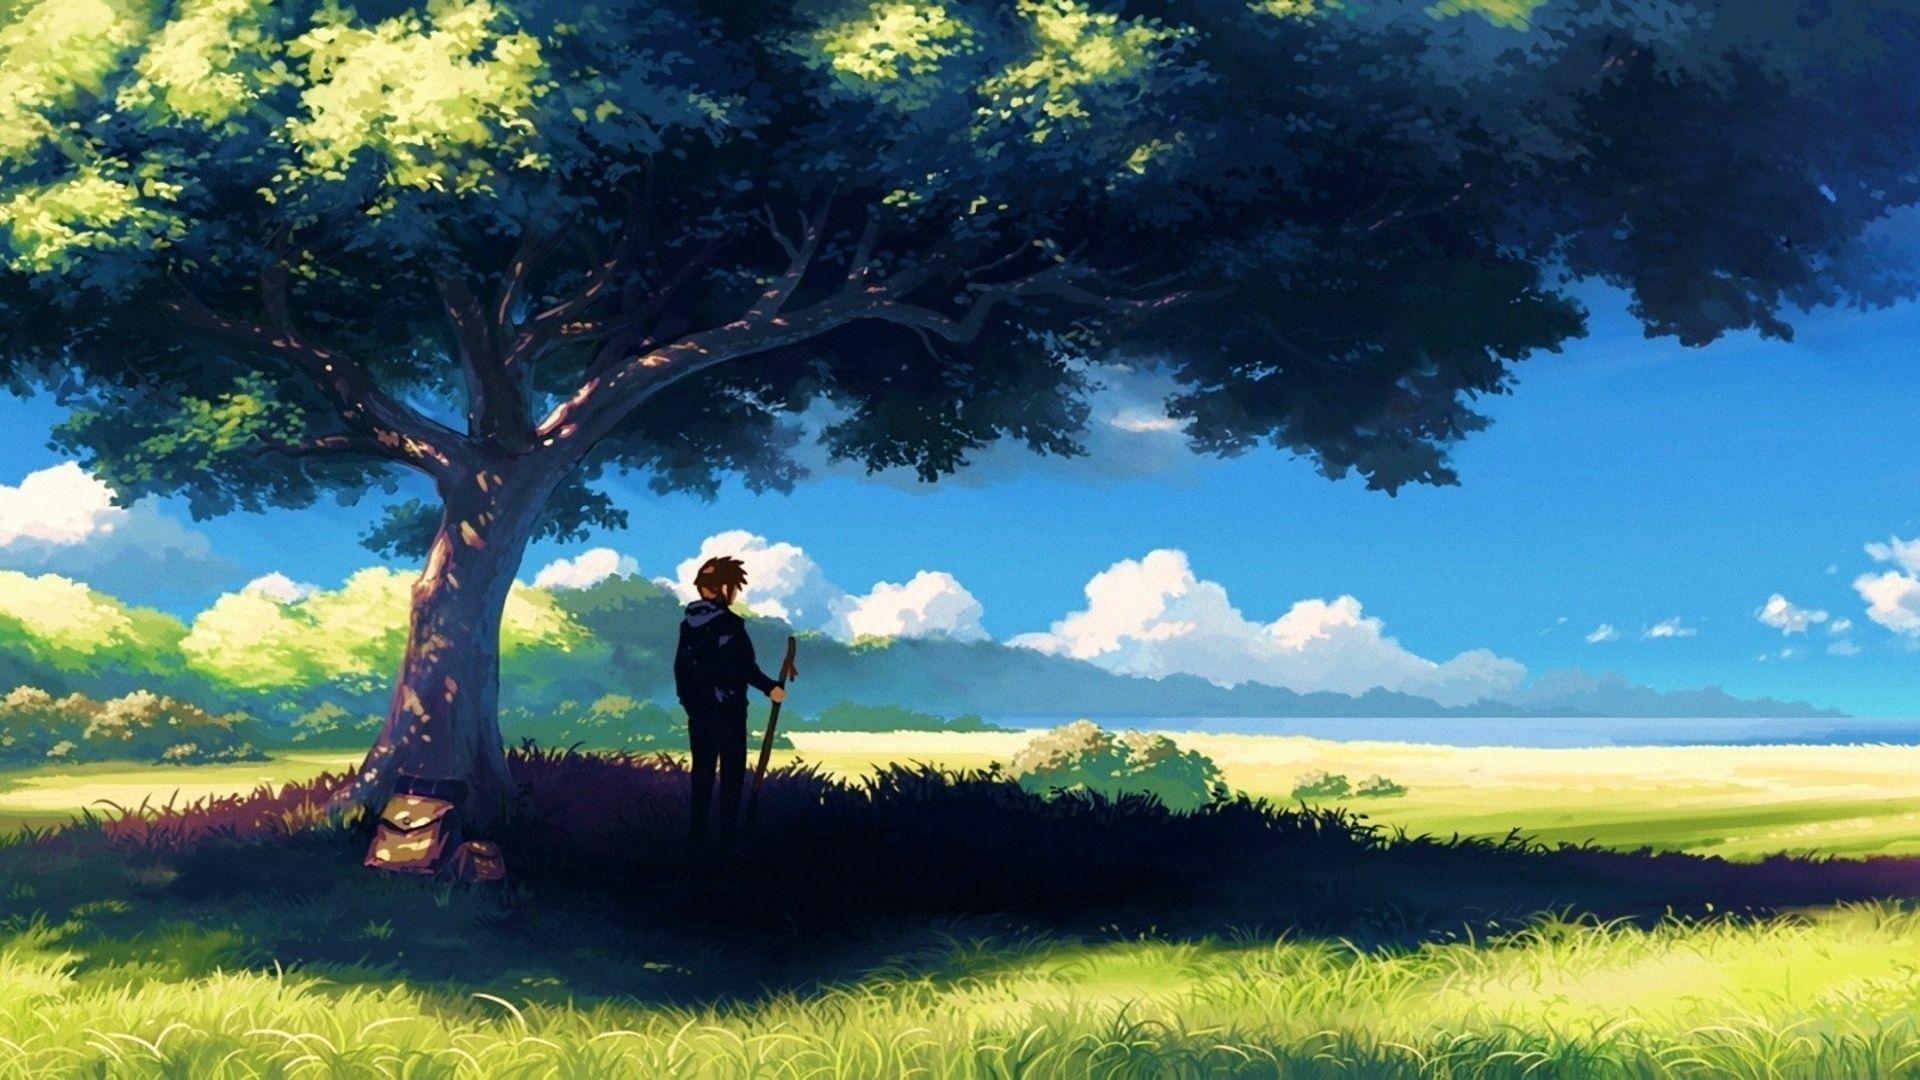 Beautiful Anime Landscapes Wallpaper Free Beautiful